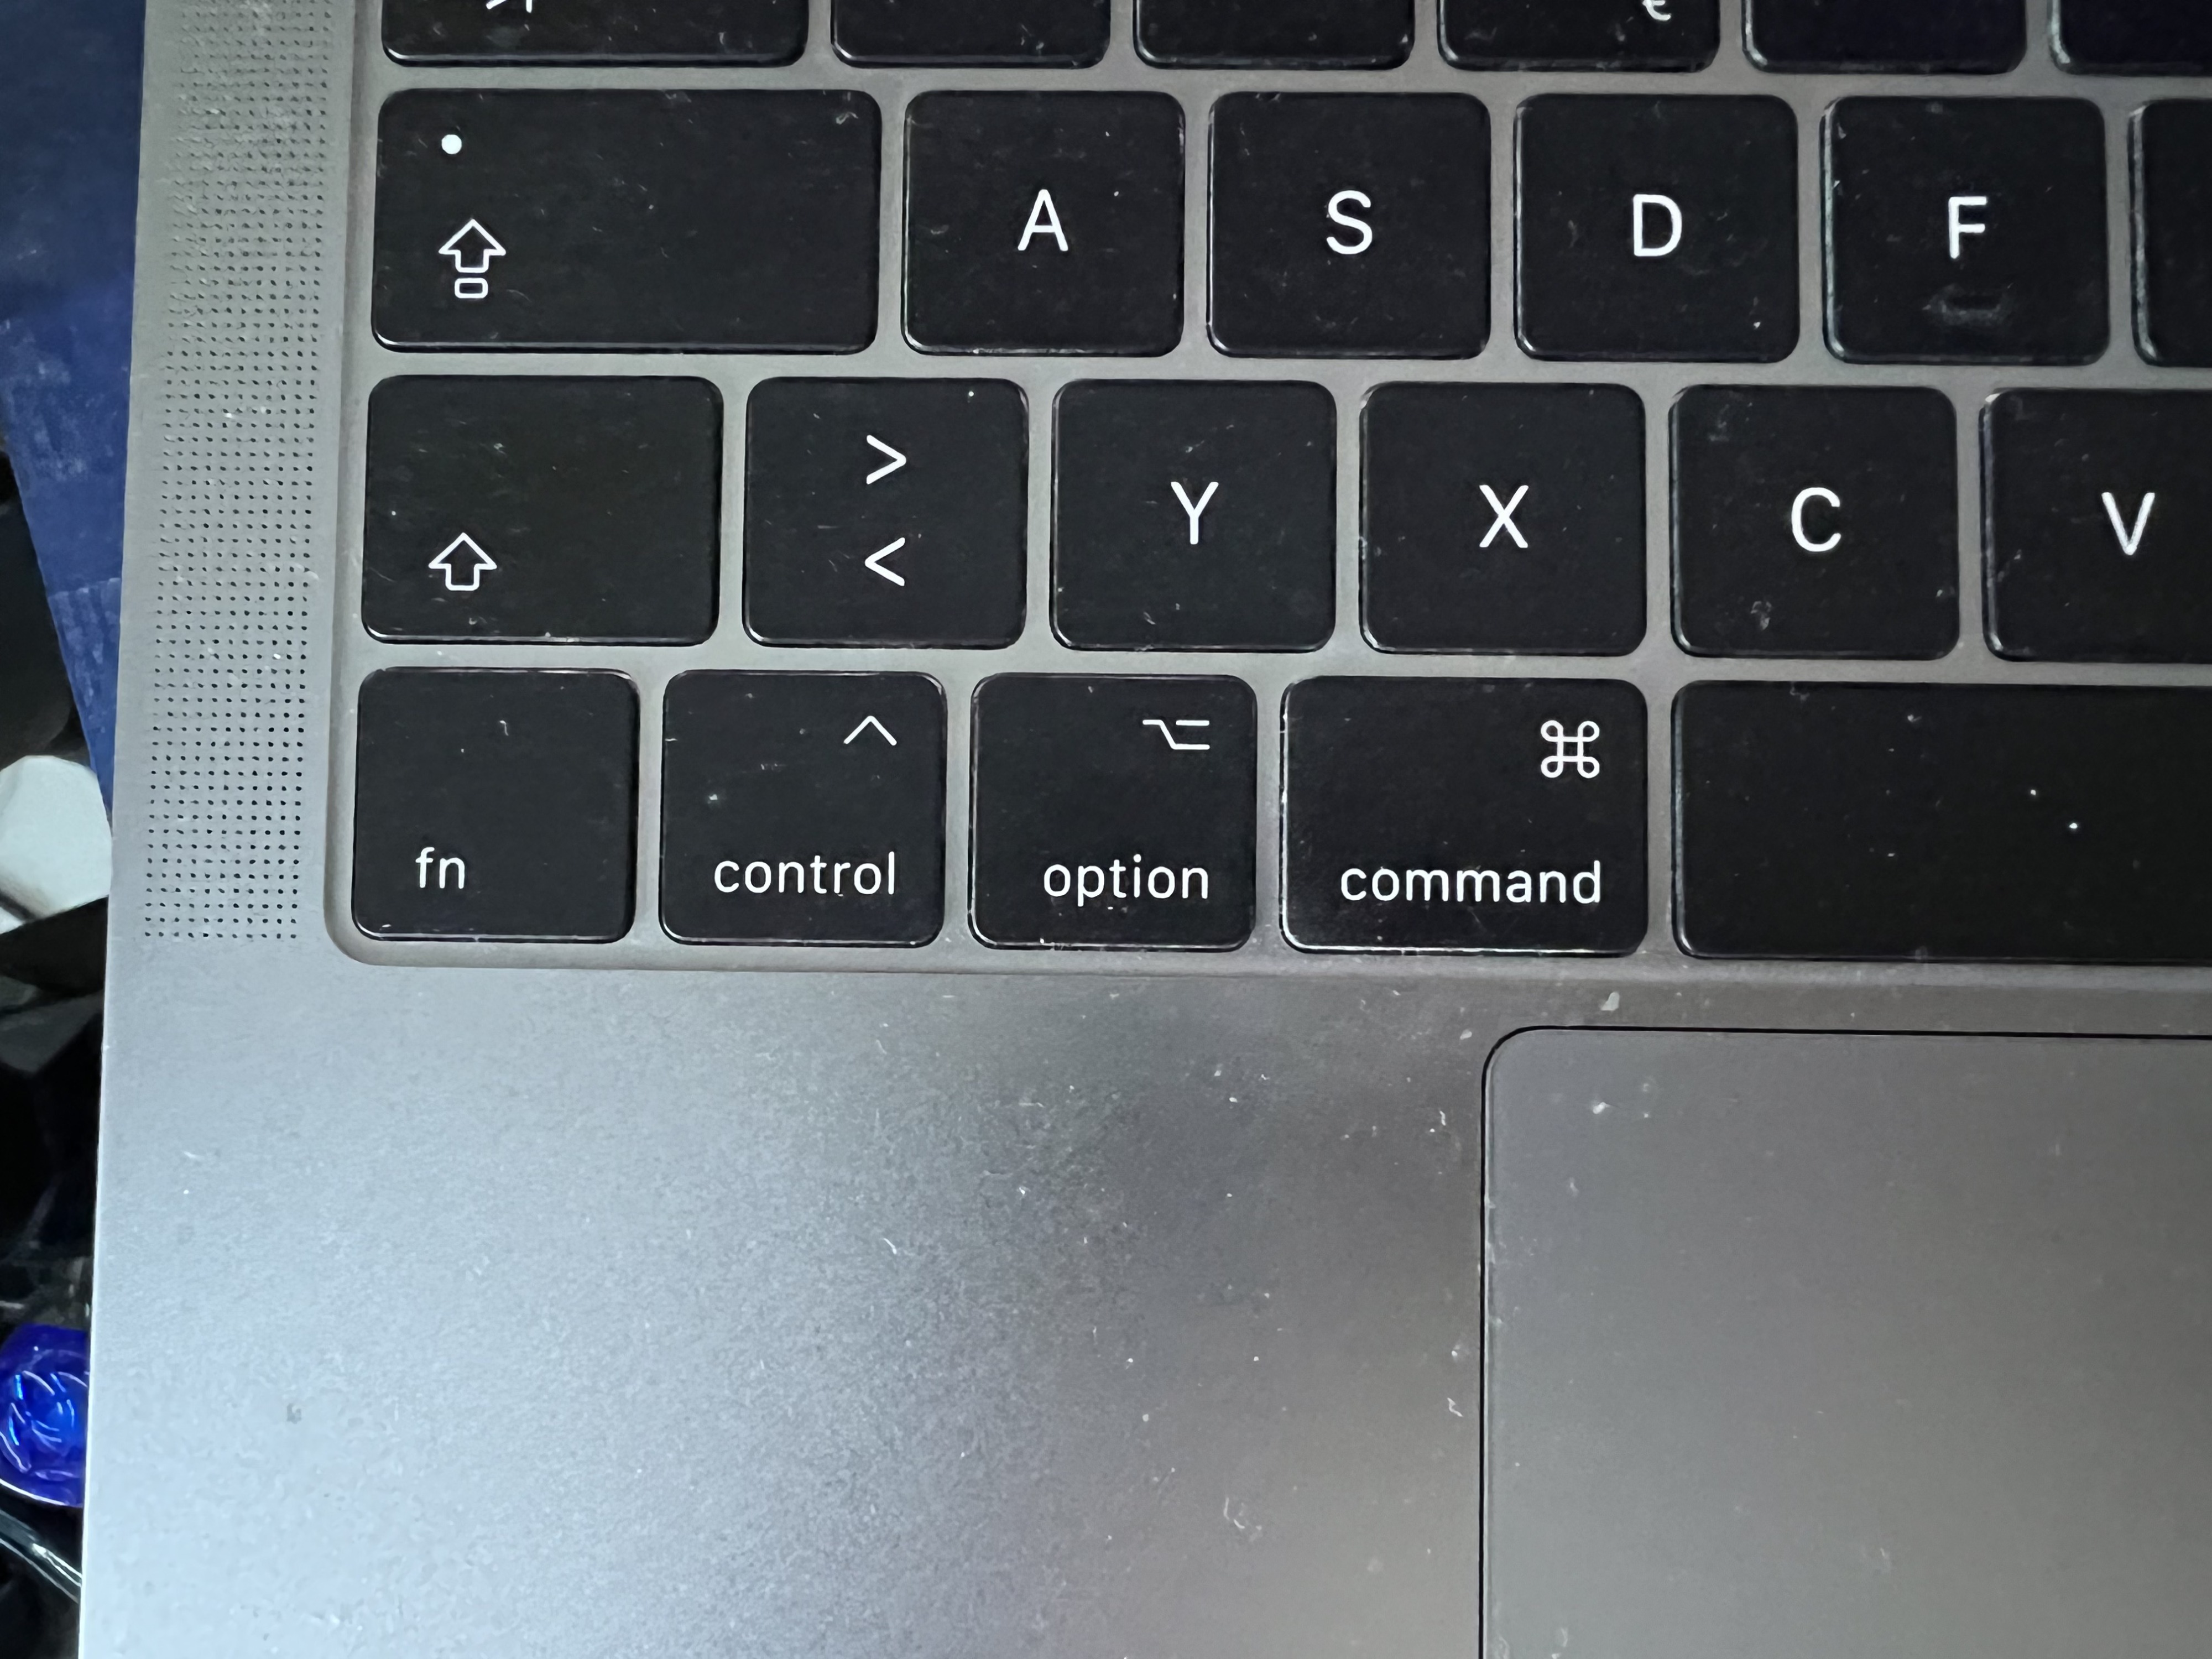 MacBook-Tastatur